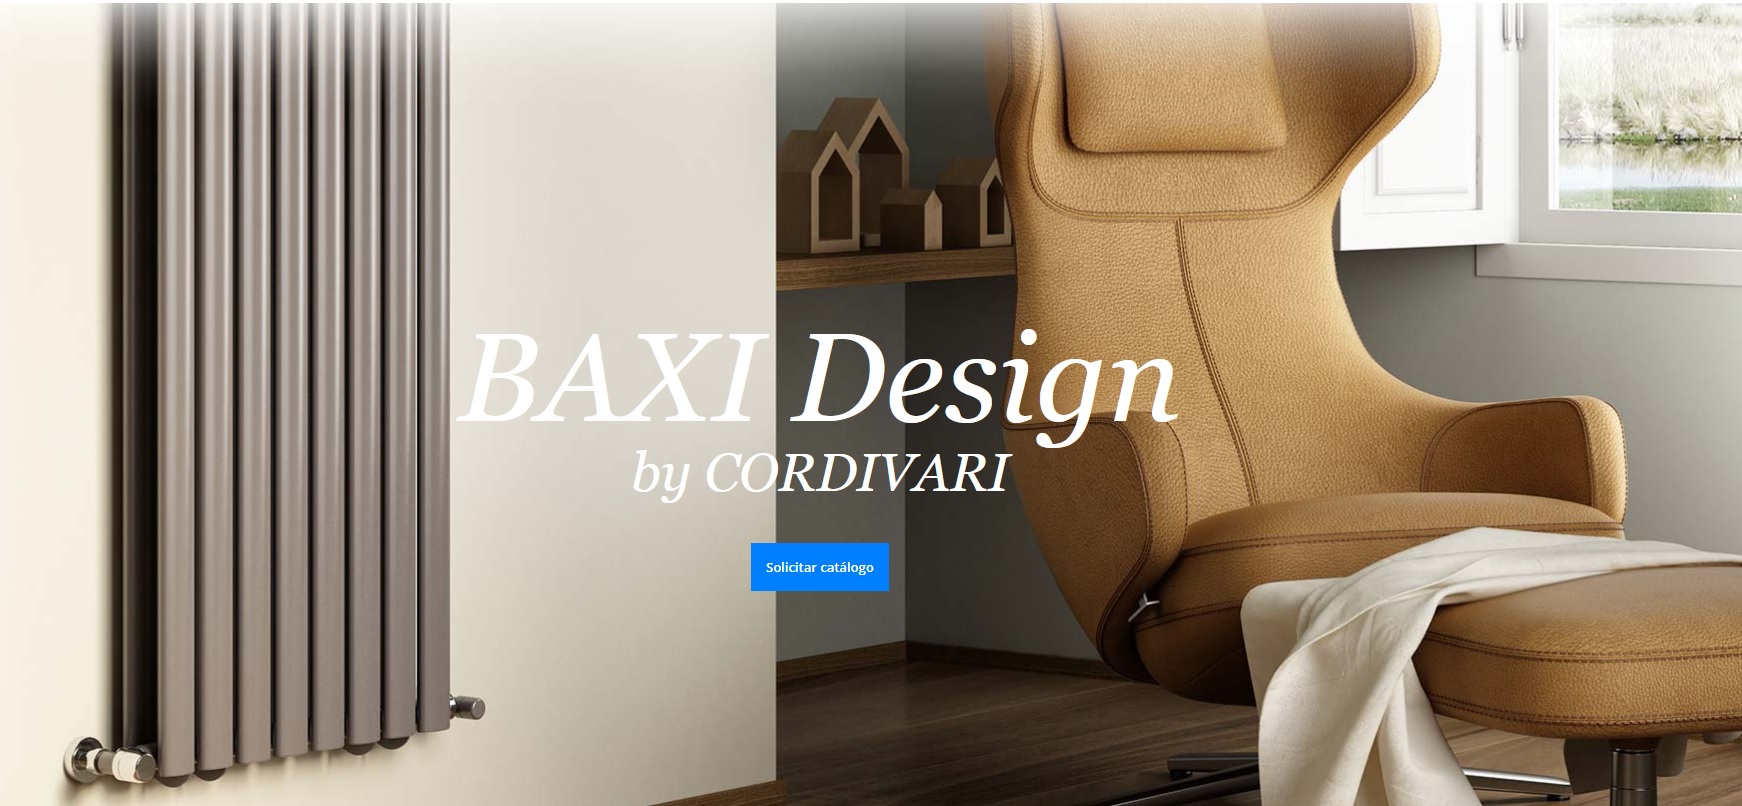 Baxi Design